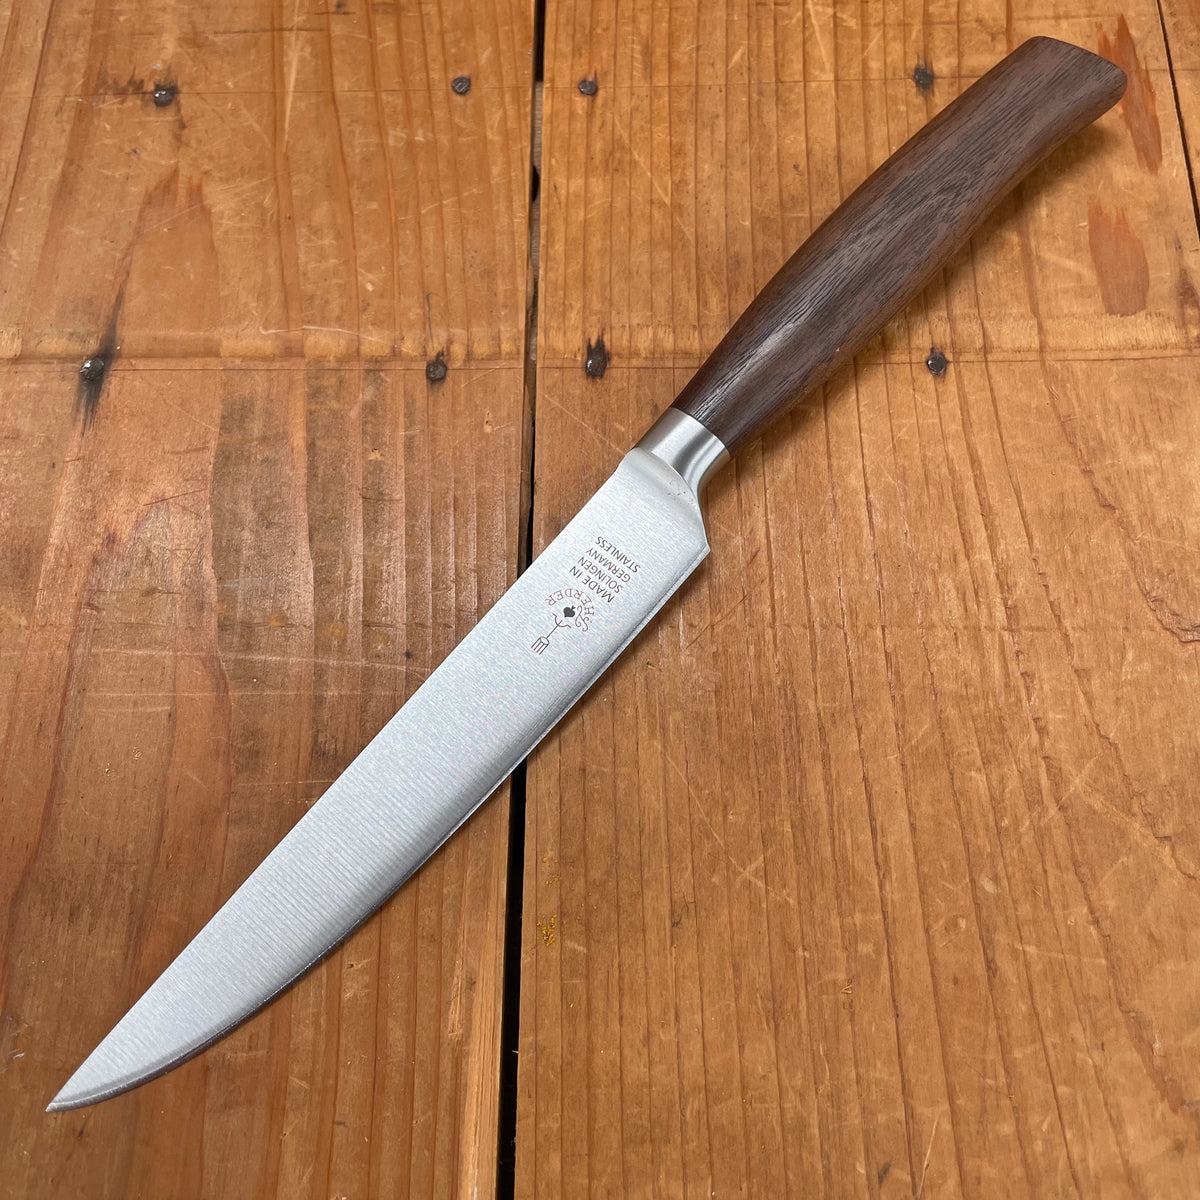 Friedr Herder 4.75" Steak Knife Forged Stainless Walnut 1/2 Bolster